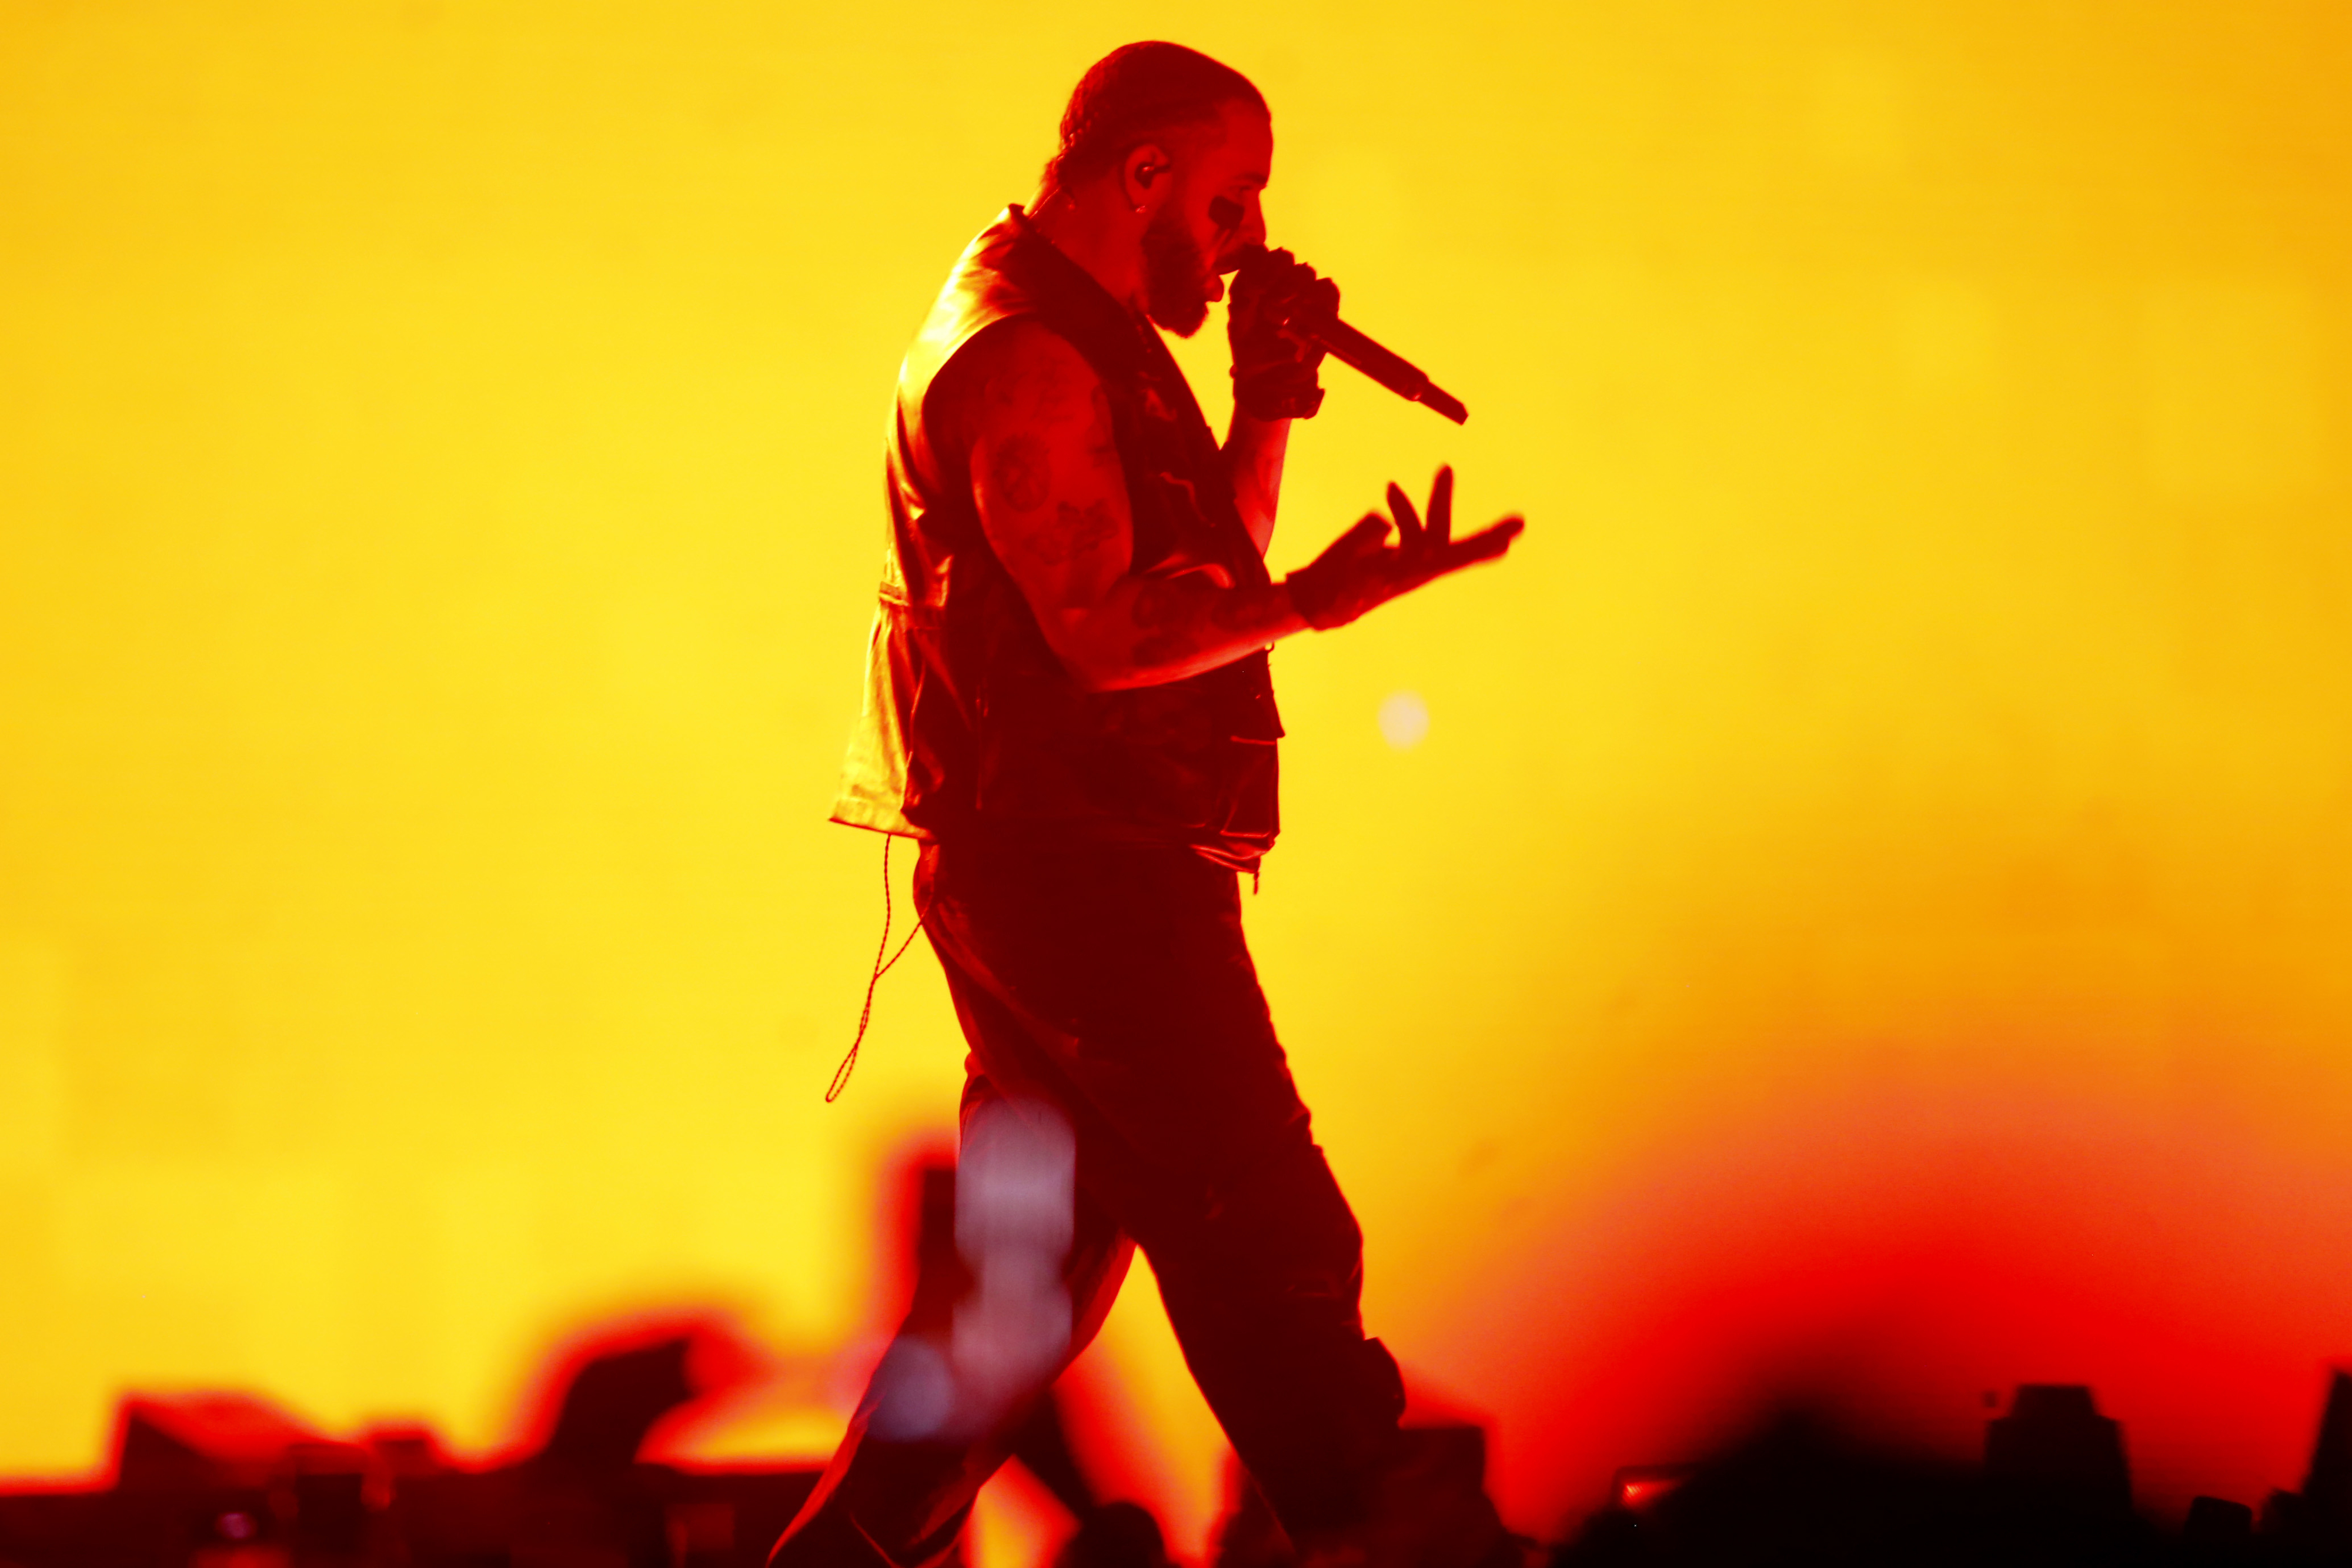 Drake onstage